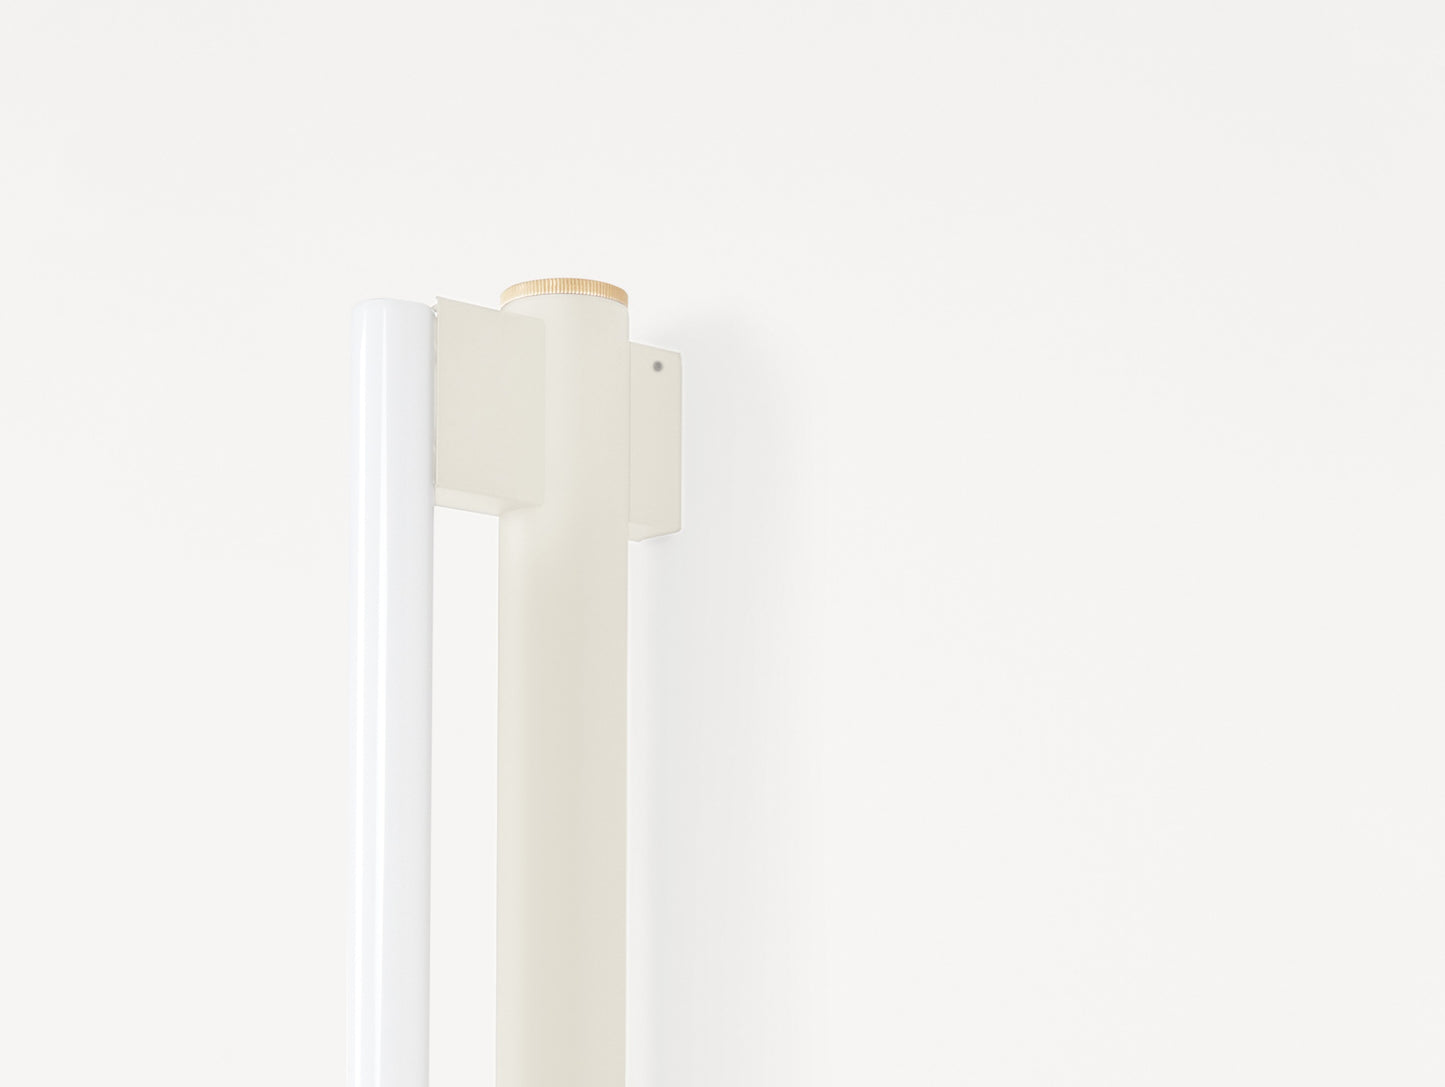 Eiffel Wall Lamp Single by Frama - Cream Powder Coated Steel